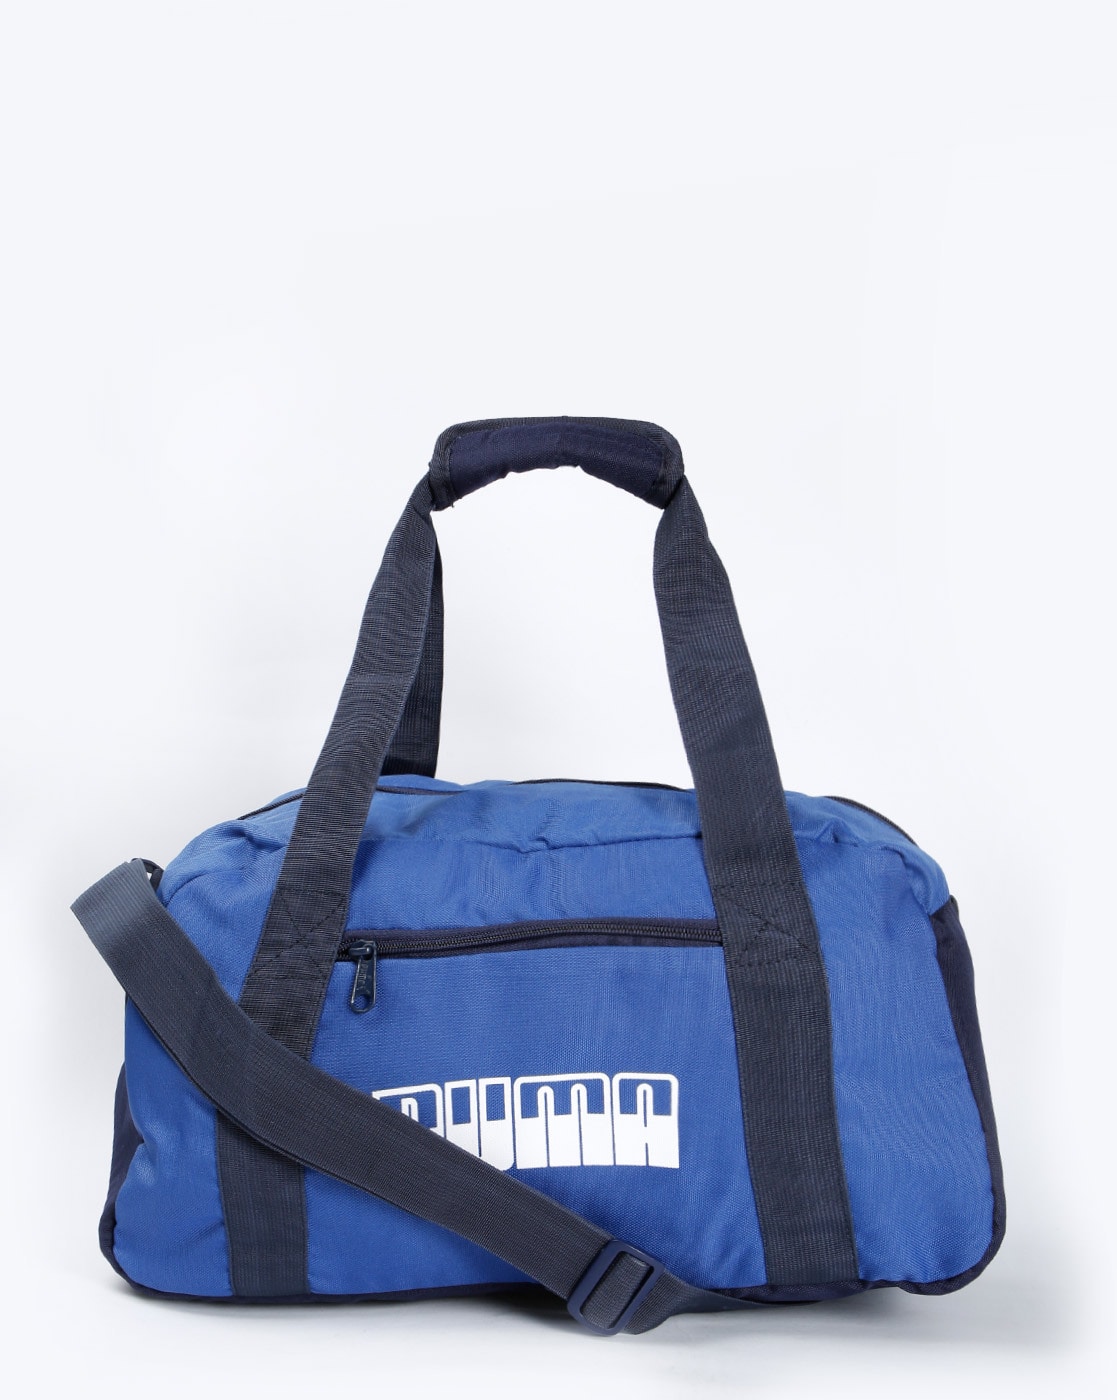 Sports \u0026 Utility Bag for Men by Puma 